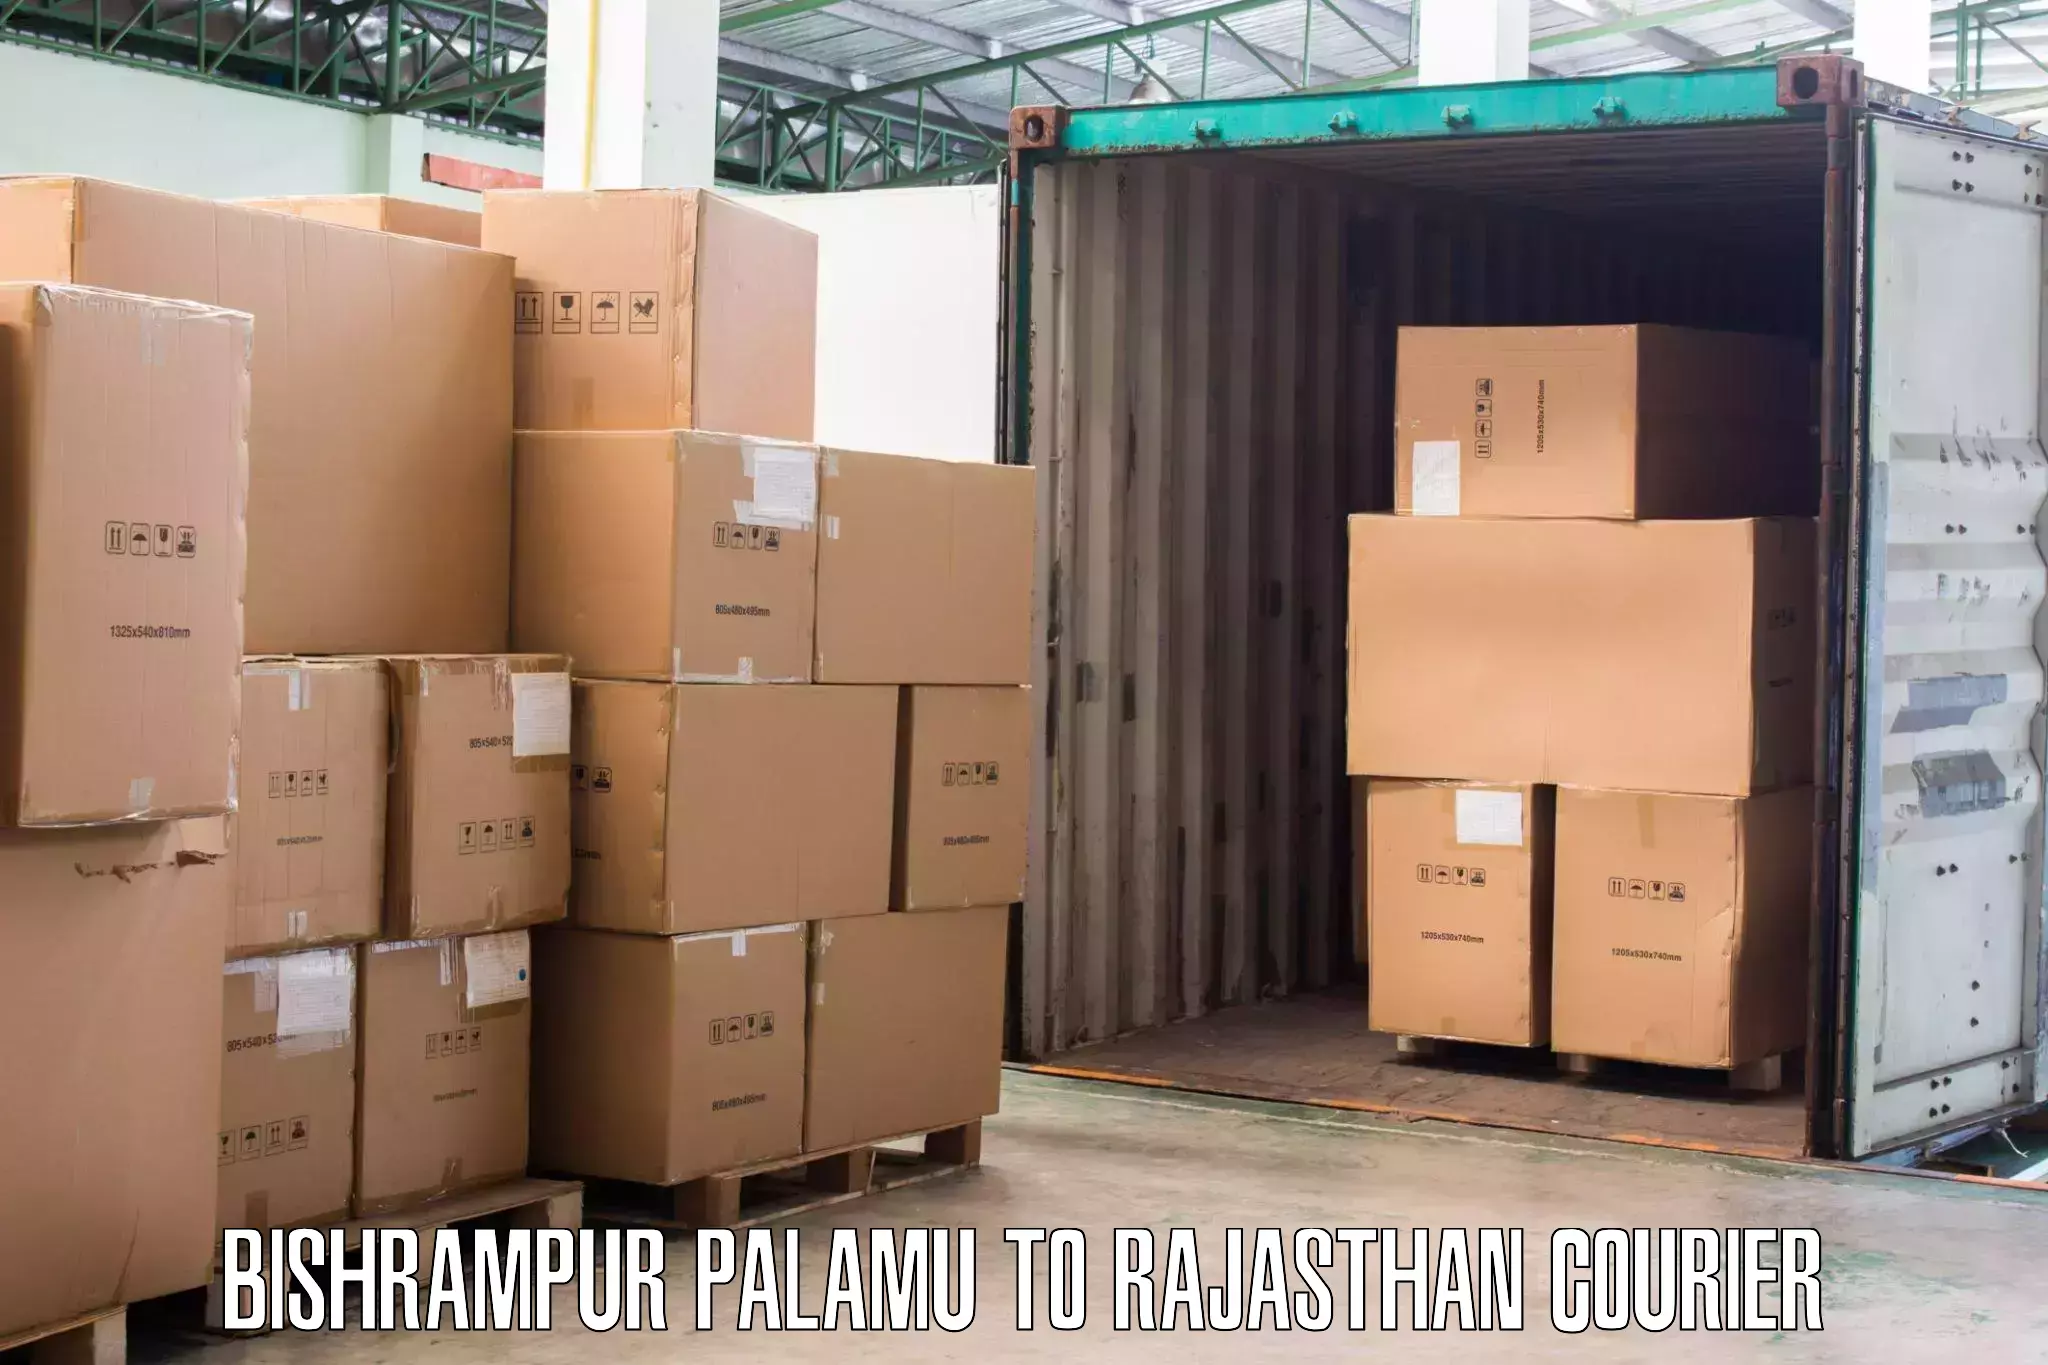 Efficient furniture transport Bishrampur Palamu to Mandalgarh